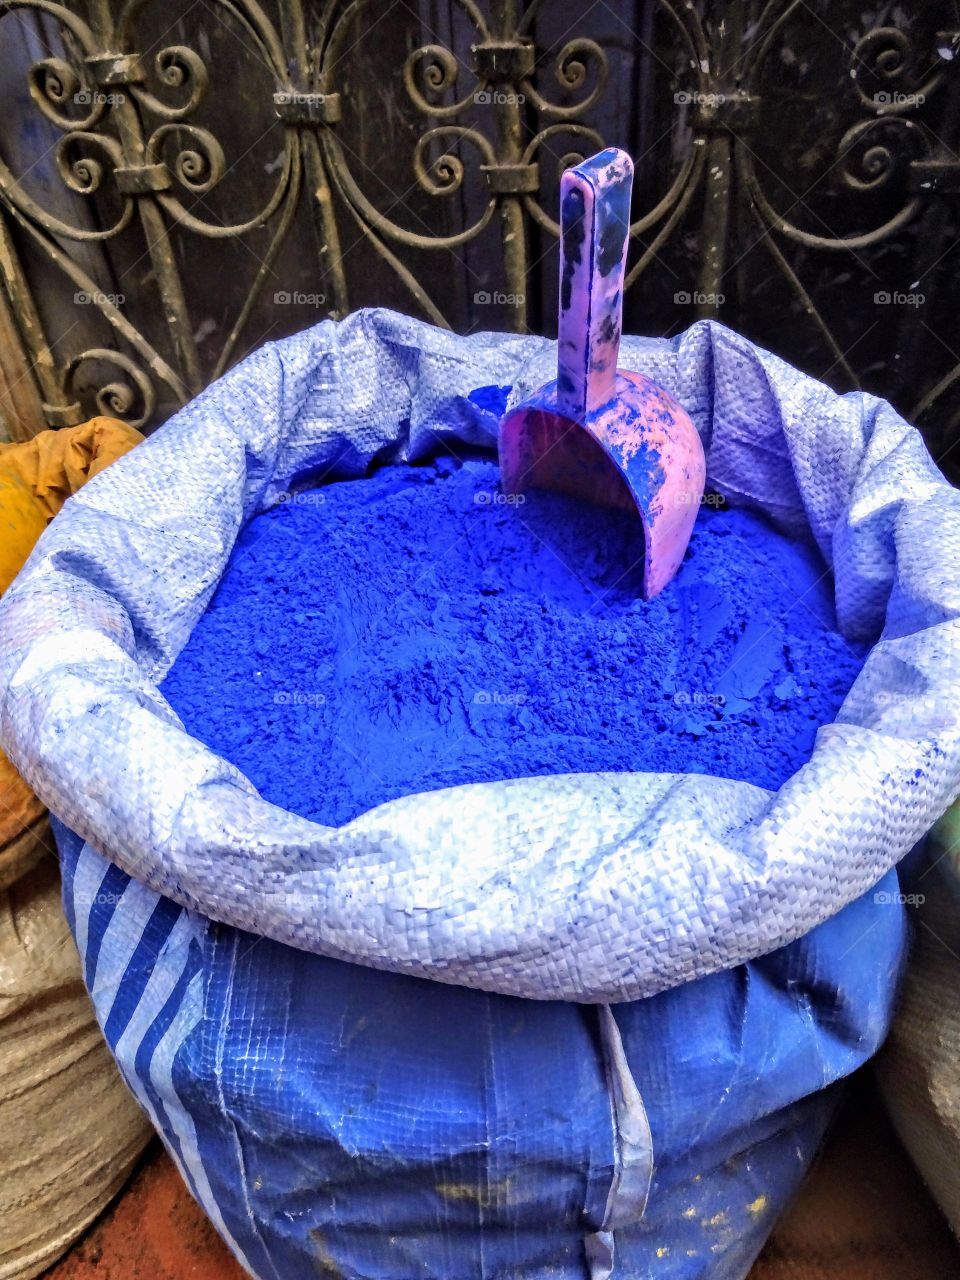 Blue dye in sack